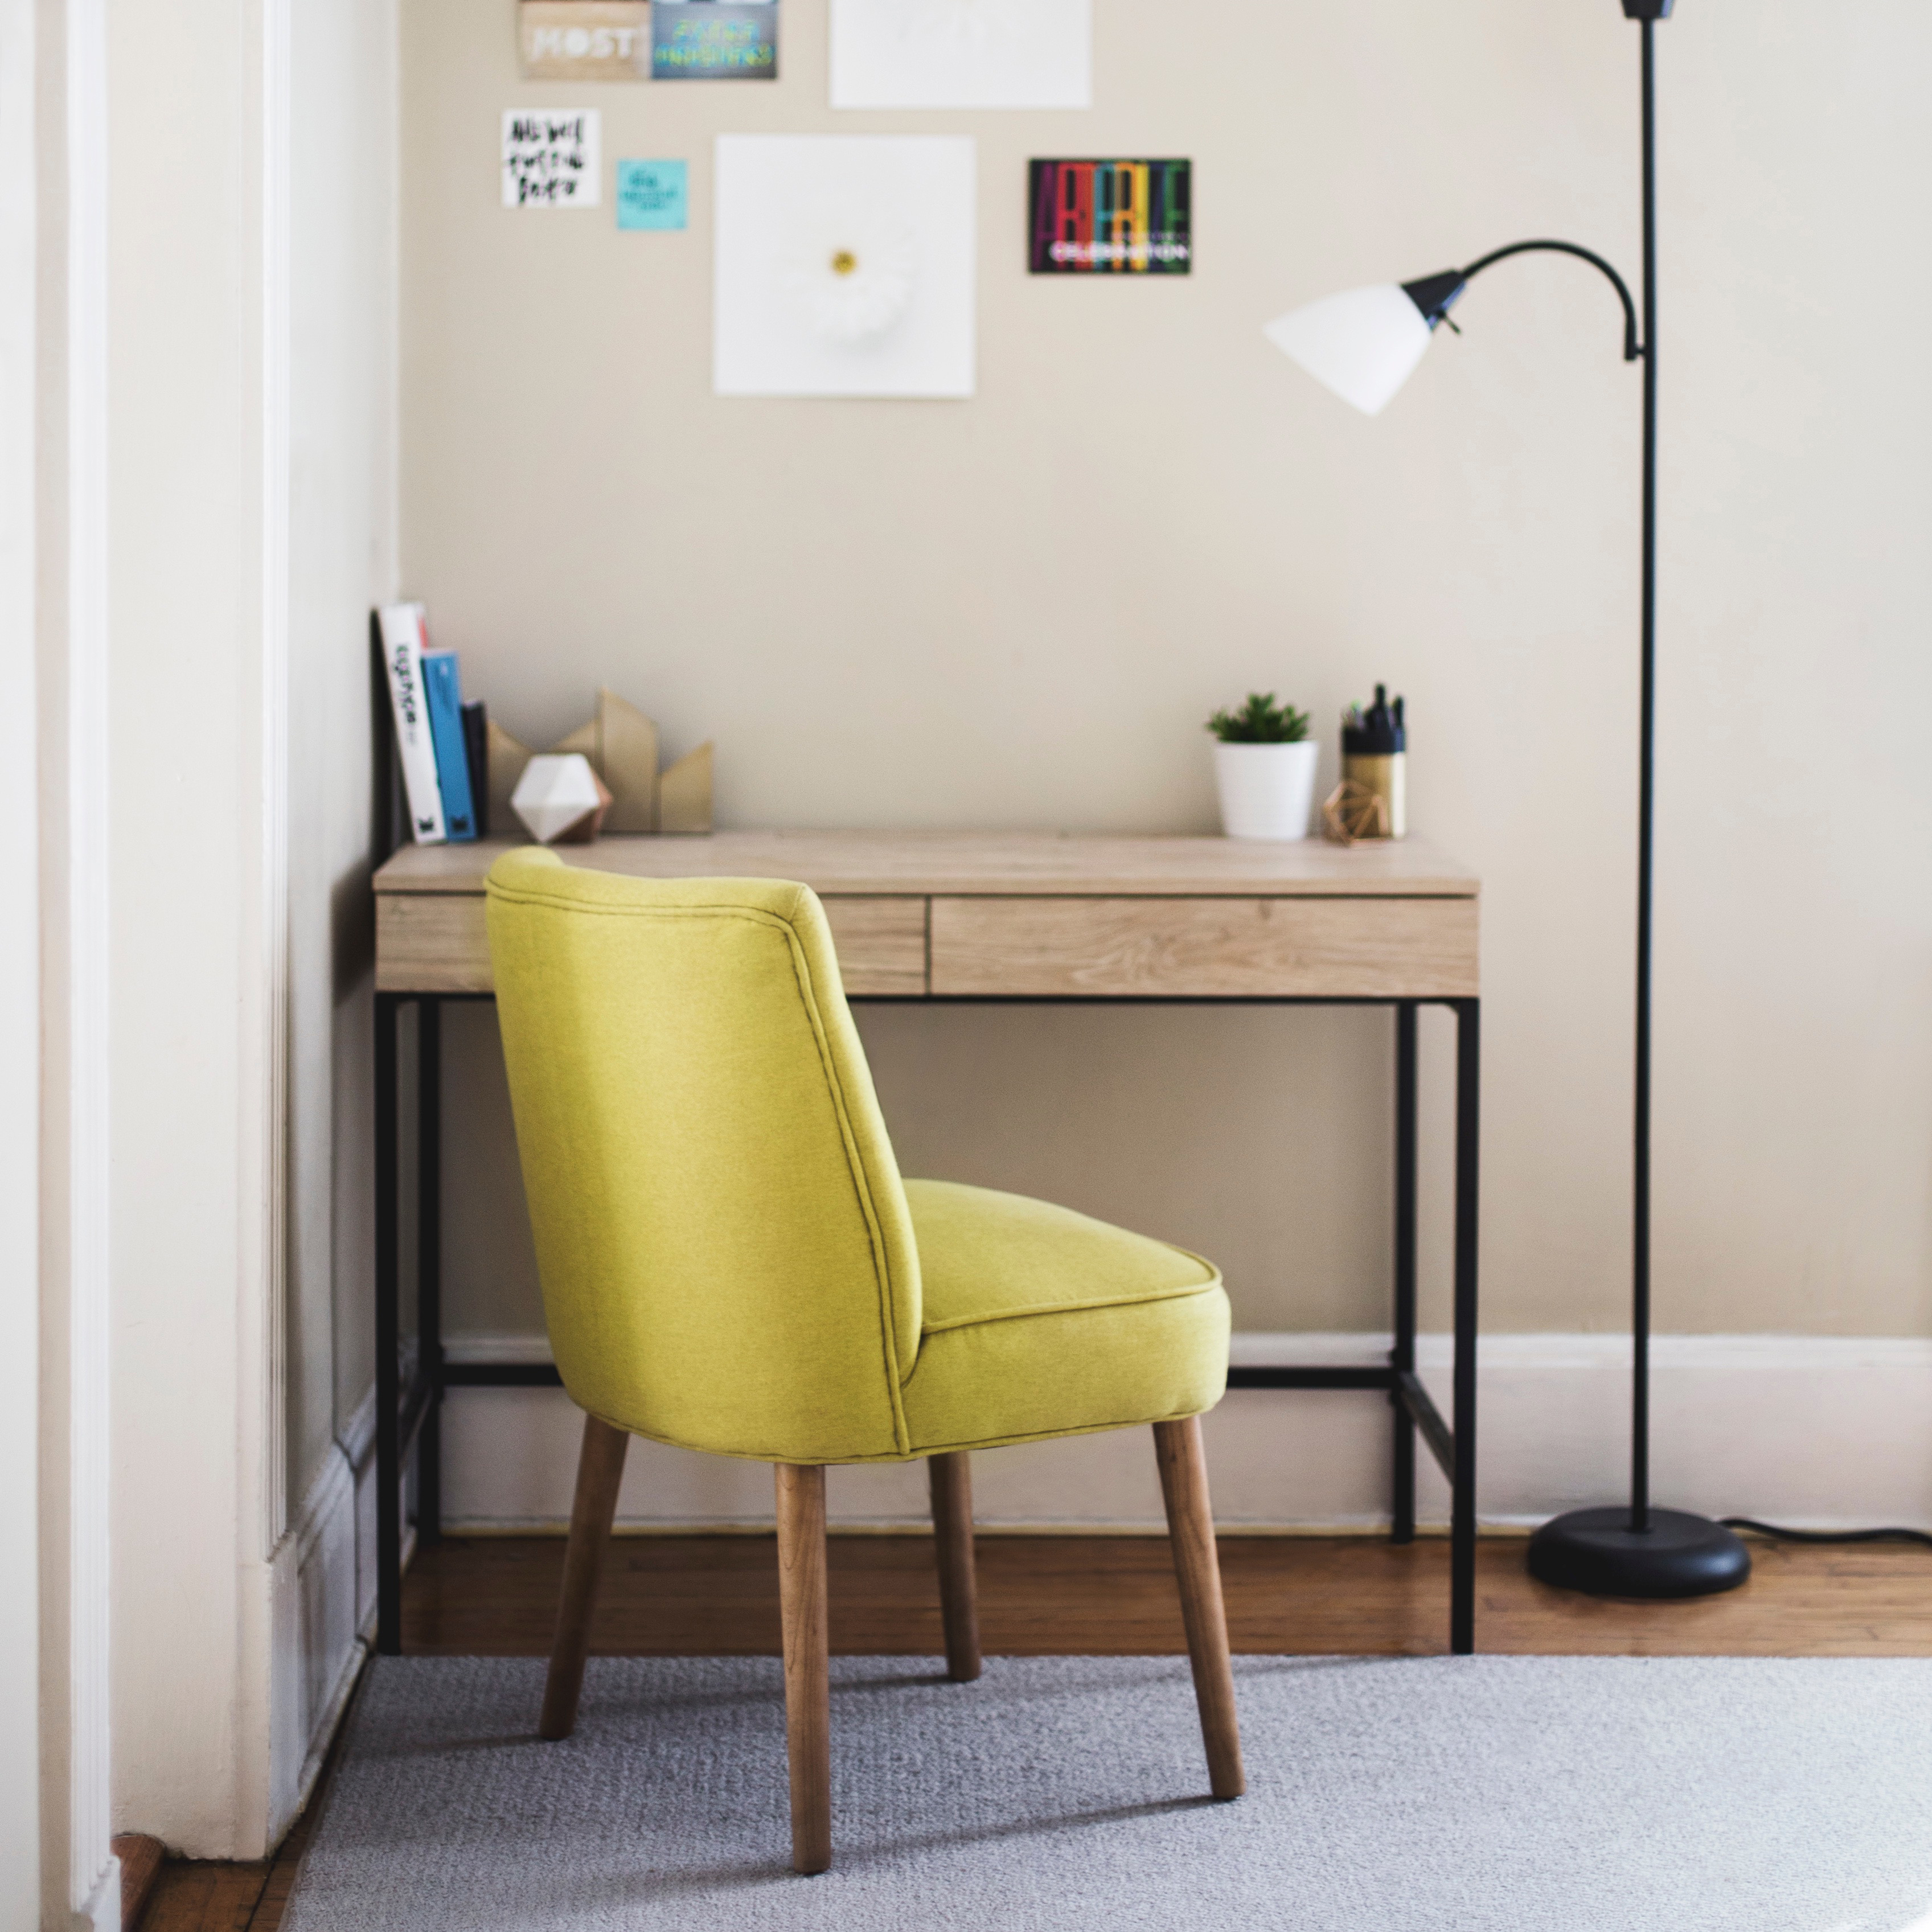 Roamlike Wohnzimmer Ecke mit limettenfarbenem Stuhl Schreibtisch Kunst und Lampe 2